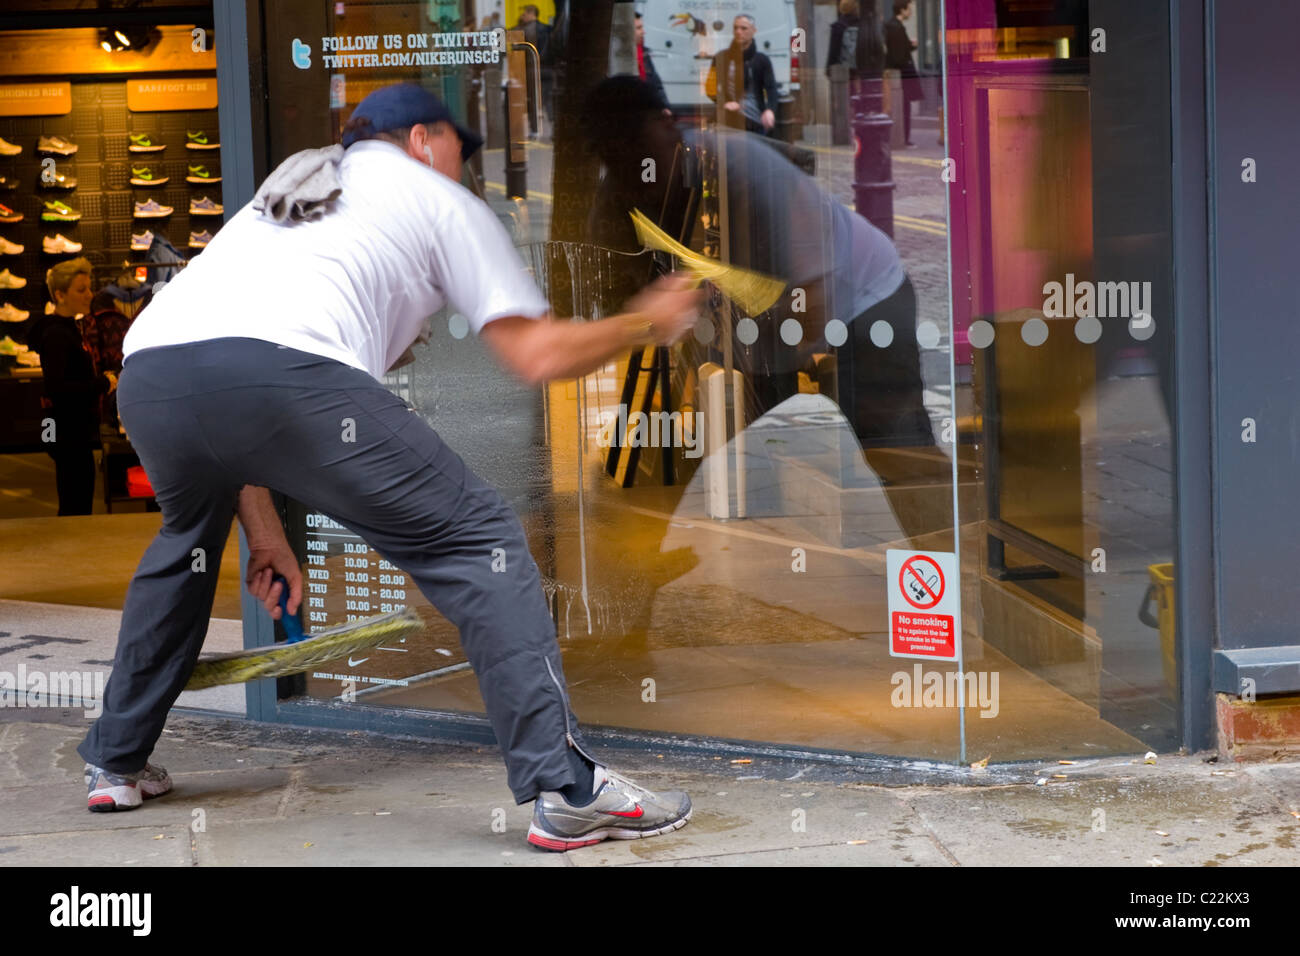 Covent Garden, Mann mittlerer Alter in Baseball-Cap reinigt Shop oder Schaufenster mit Schwamm & Rakel Motion blur Stockfoto